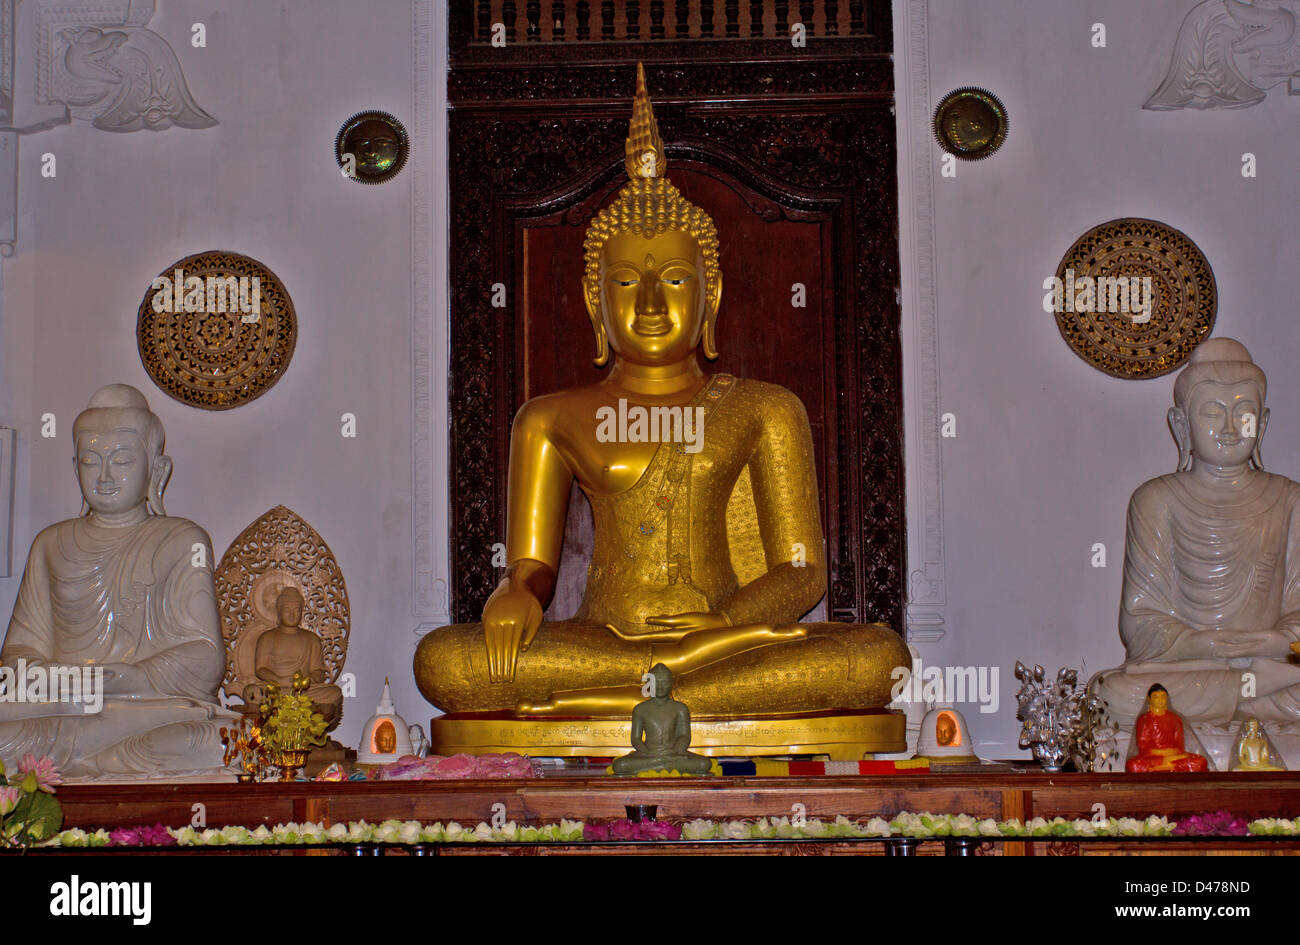 Bouddha en or DANS LE TEMPLE DE LA DENT sacrée de Kandy AU SRI LANKA Banque D'Images